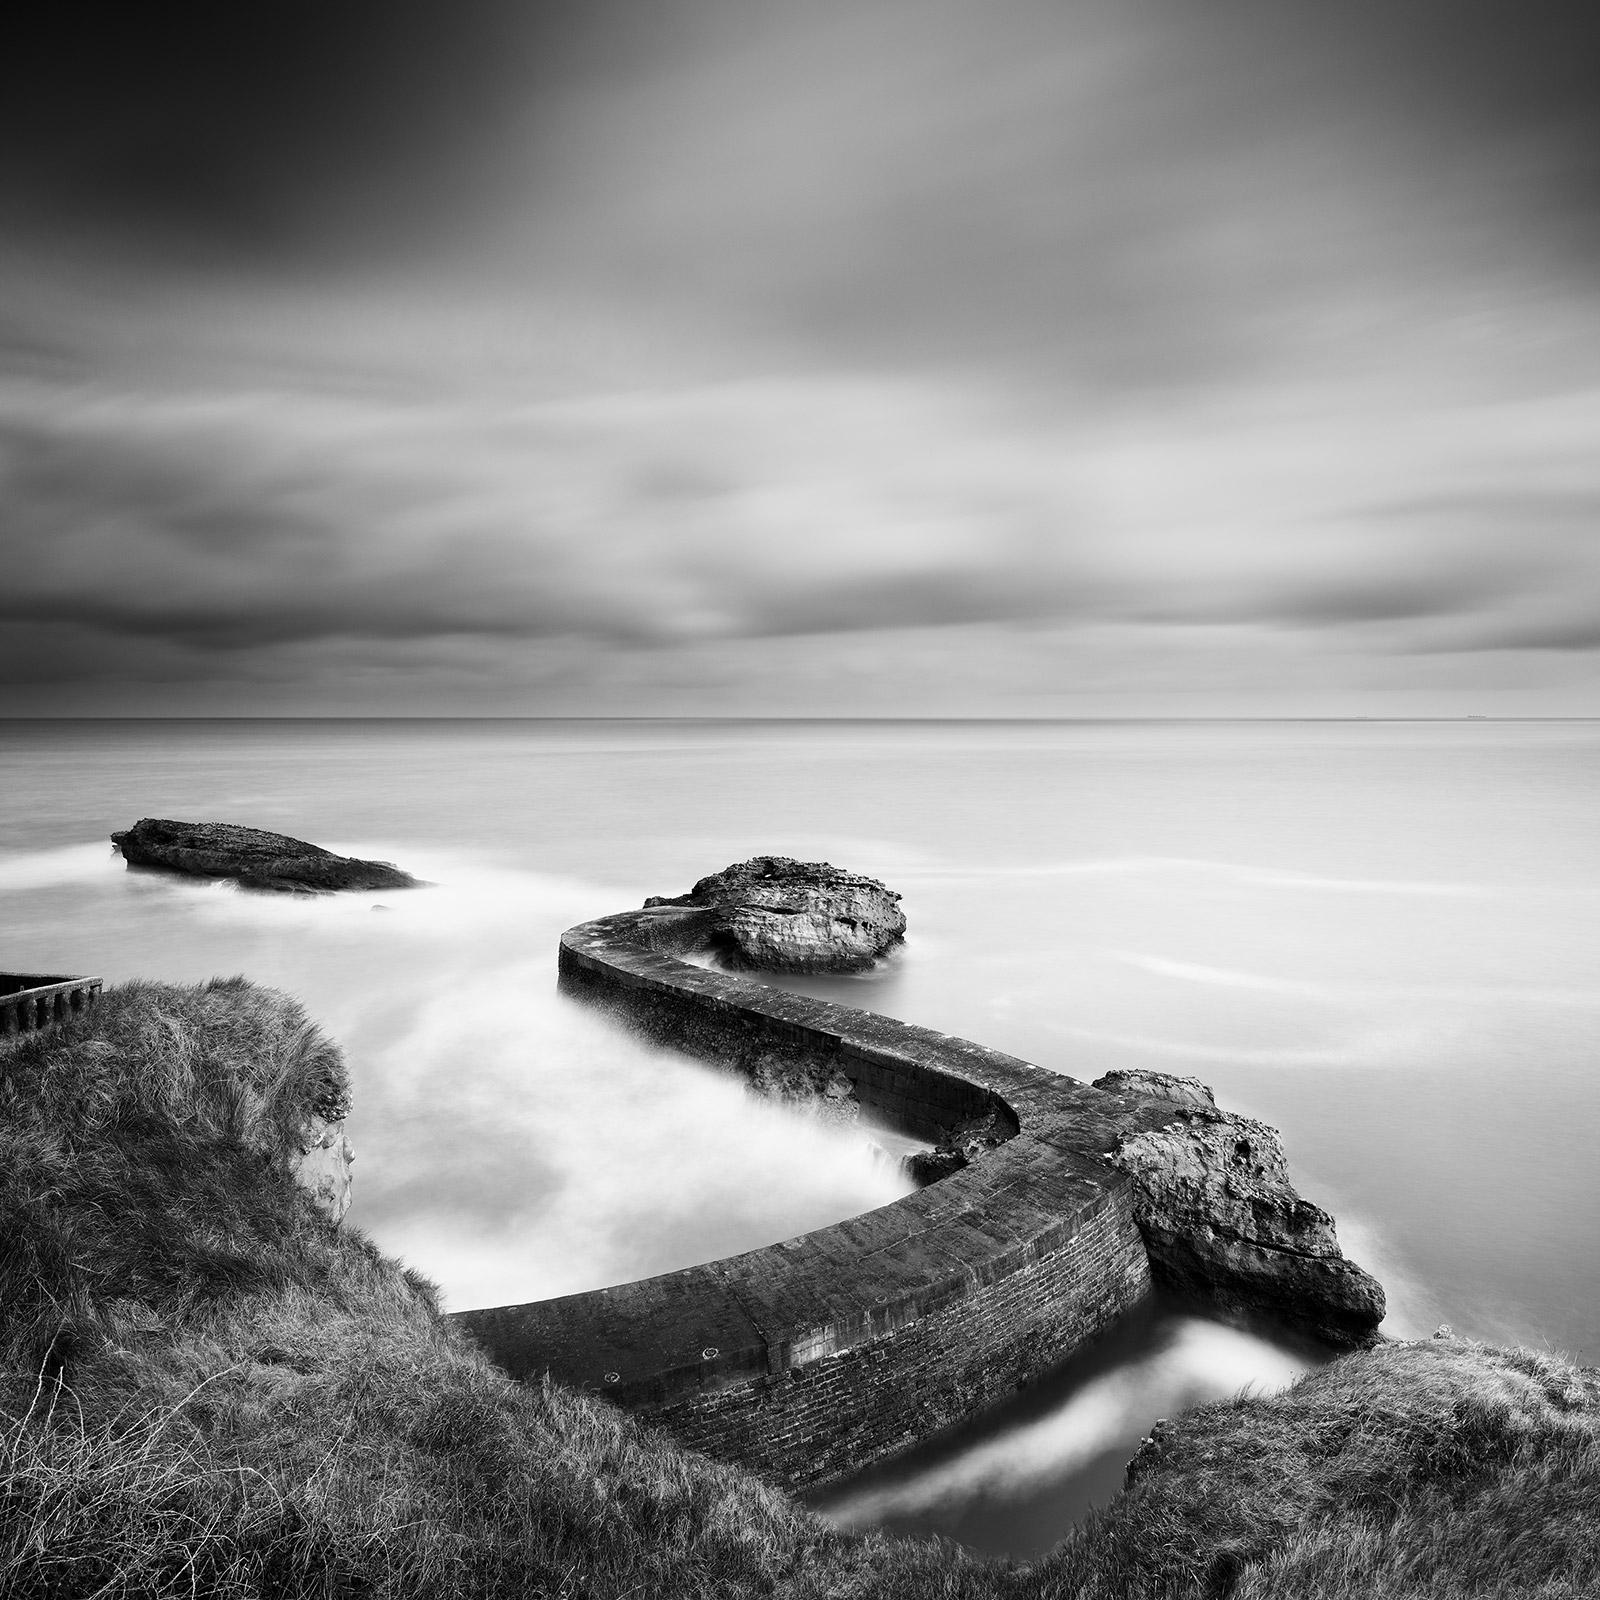 Black and White Photograph Gerald Berghammer - Jetée du brise-lames, côte atlantique, France, photographie de paysage aquatique en noir et blanc 